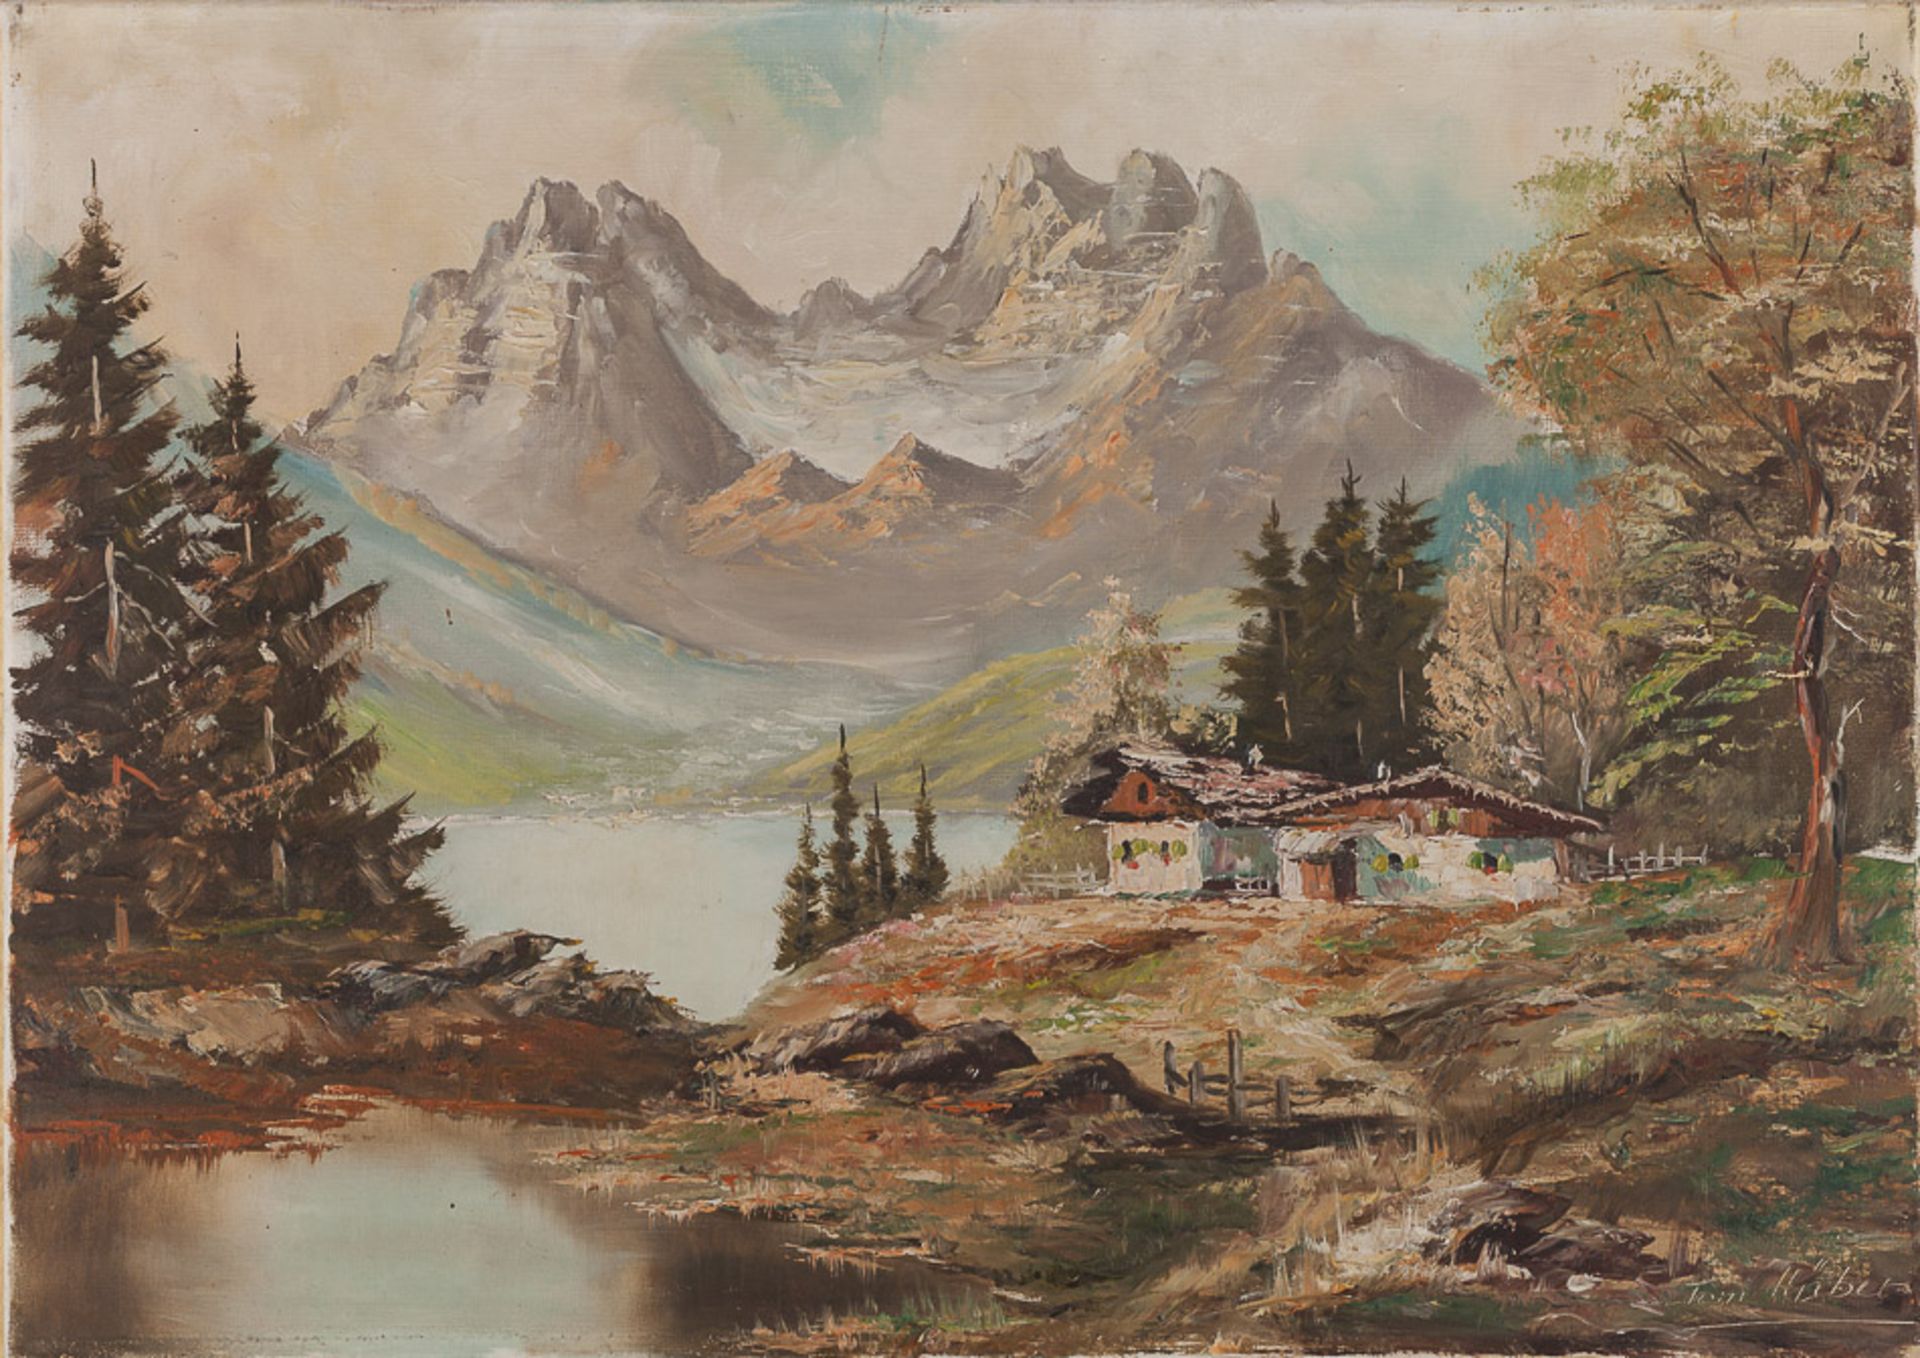 Toni Hüber 20. Jhd."Gebirgslandschaft"
Gemälde Öl/Leinwand, 51 cm x 70 cm,
rechts unten signiert